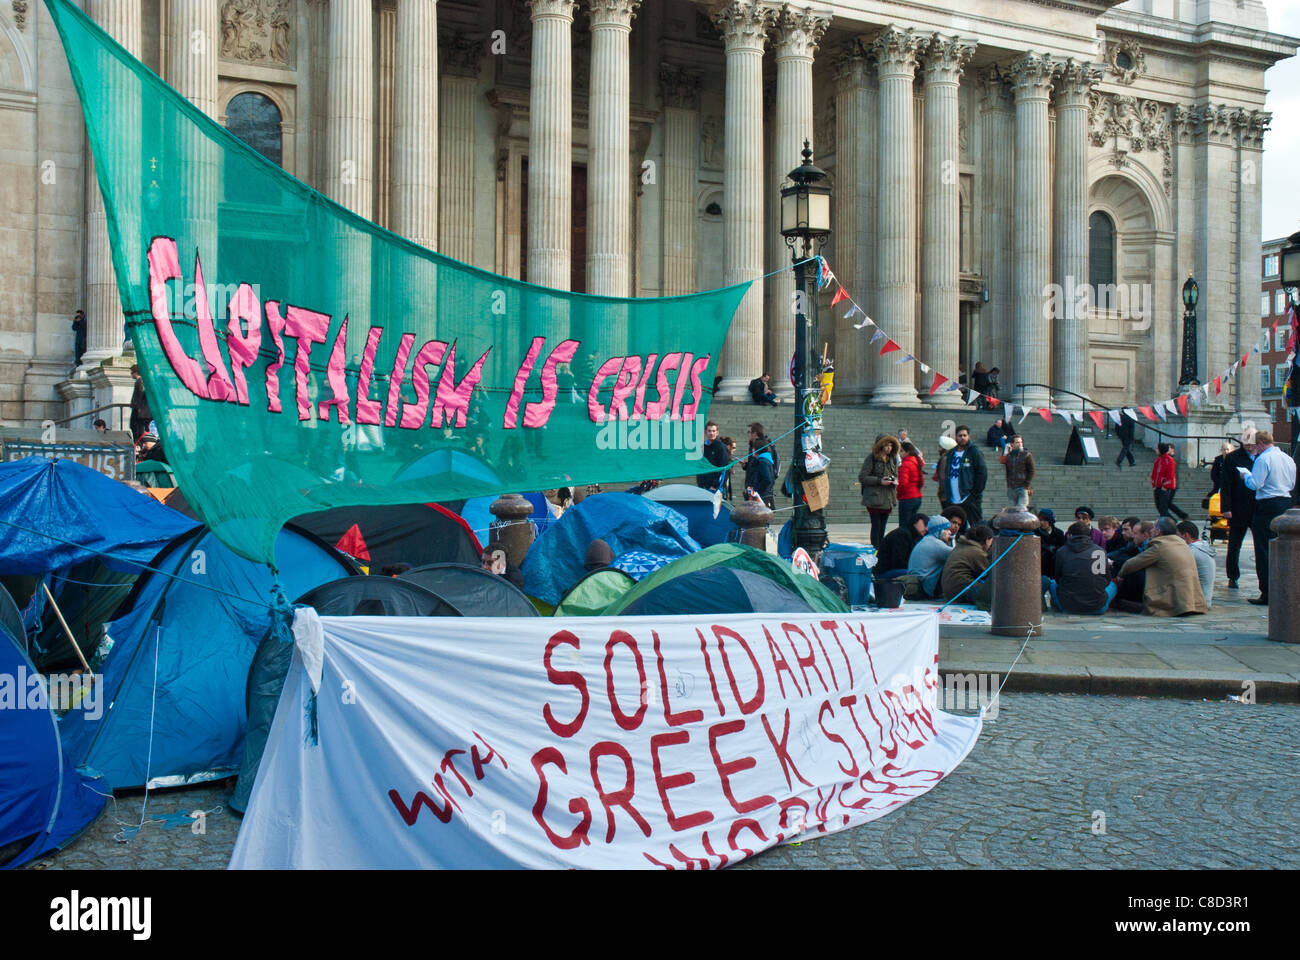 St paulsst Pauls, London besetzen, in Front sind Kapitalismus Banner' ist Krise' und 'Solidarität mit griechischen Studenten/Mitarbeiter". Stockfoto